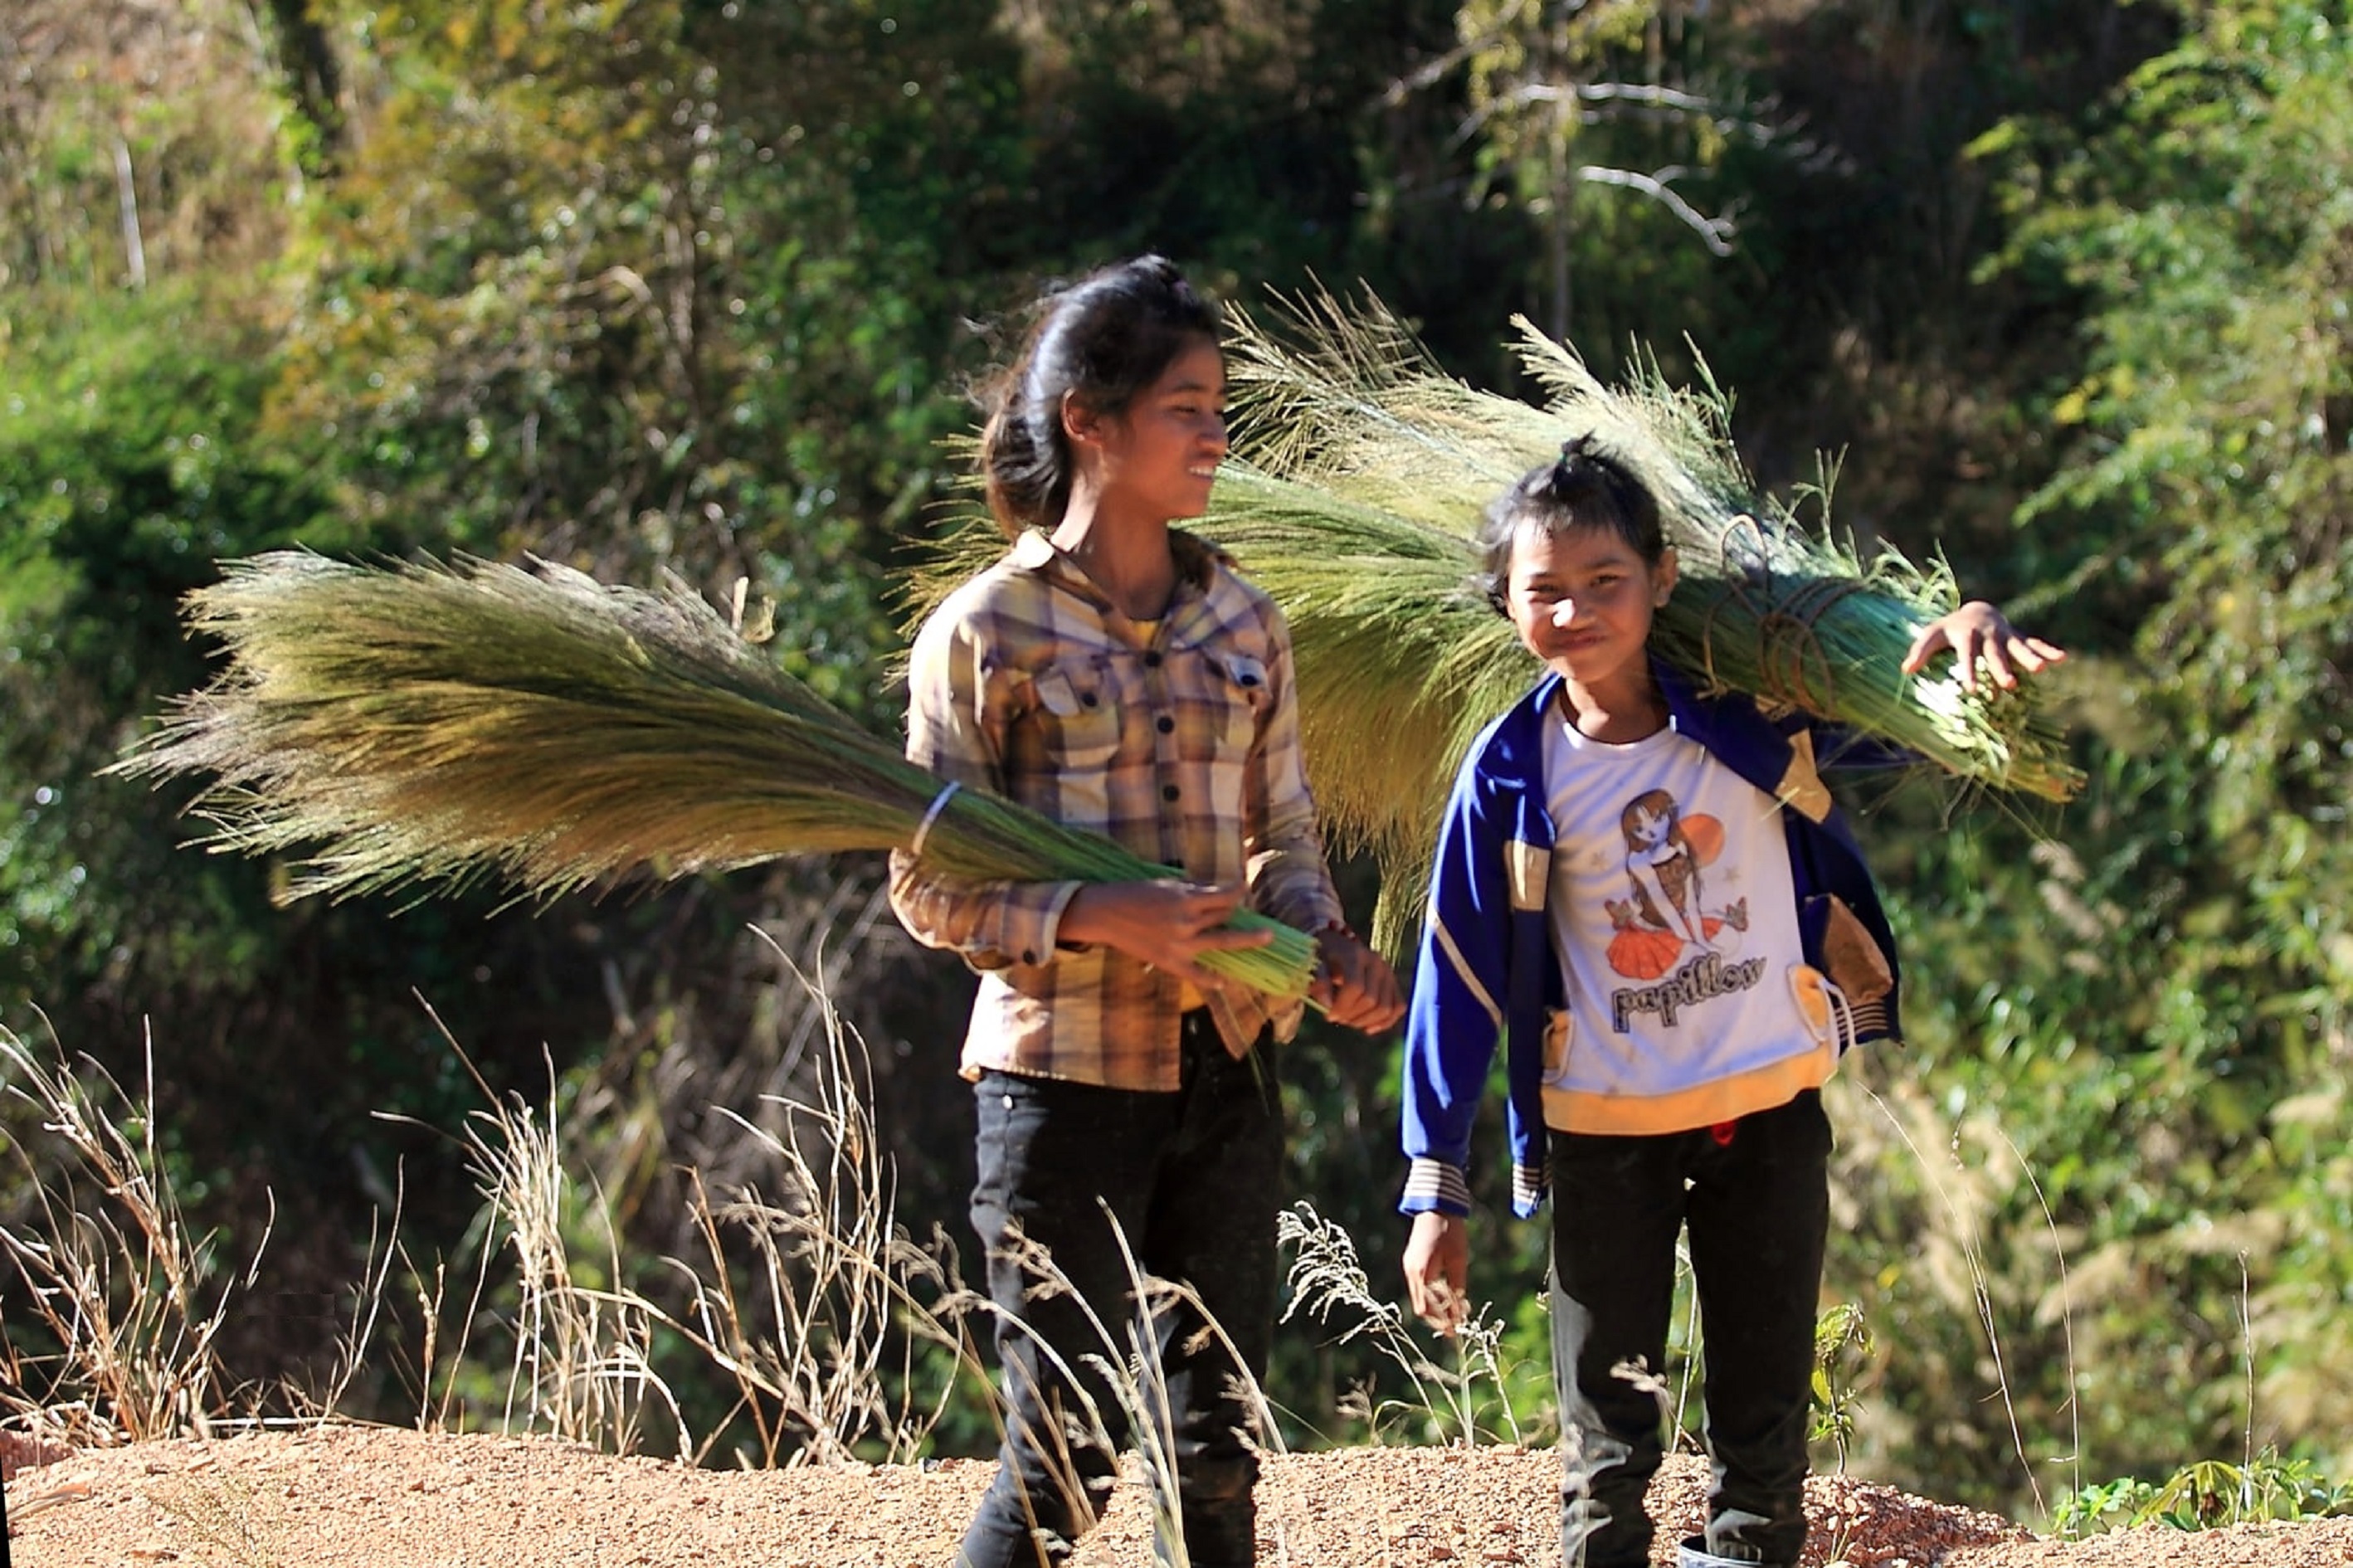 Ngoài những ngày đi học, nhiều trẻ em ở các buôn làng cũng theo người lớn lên rừng hái chít đót